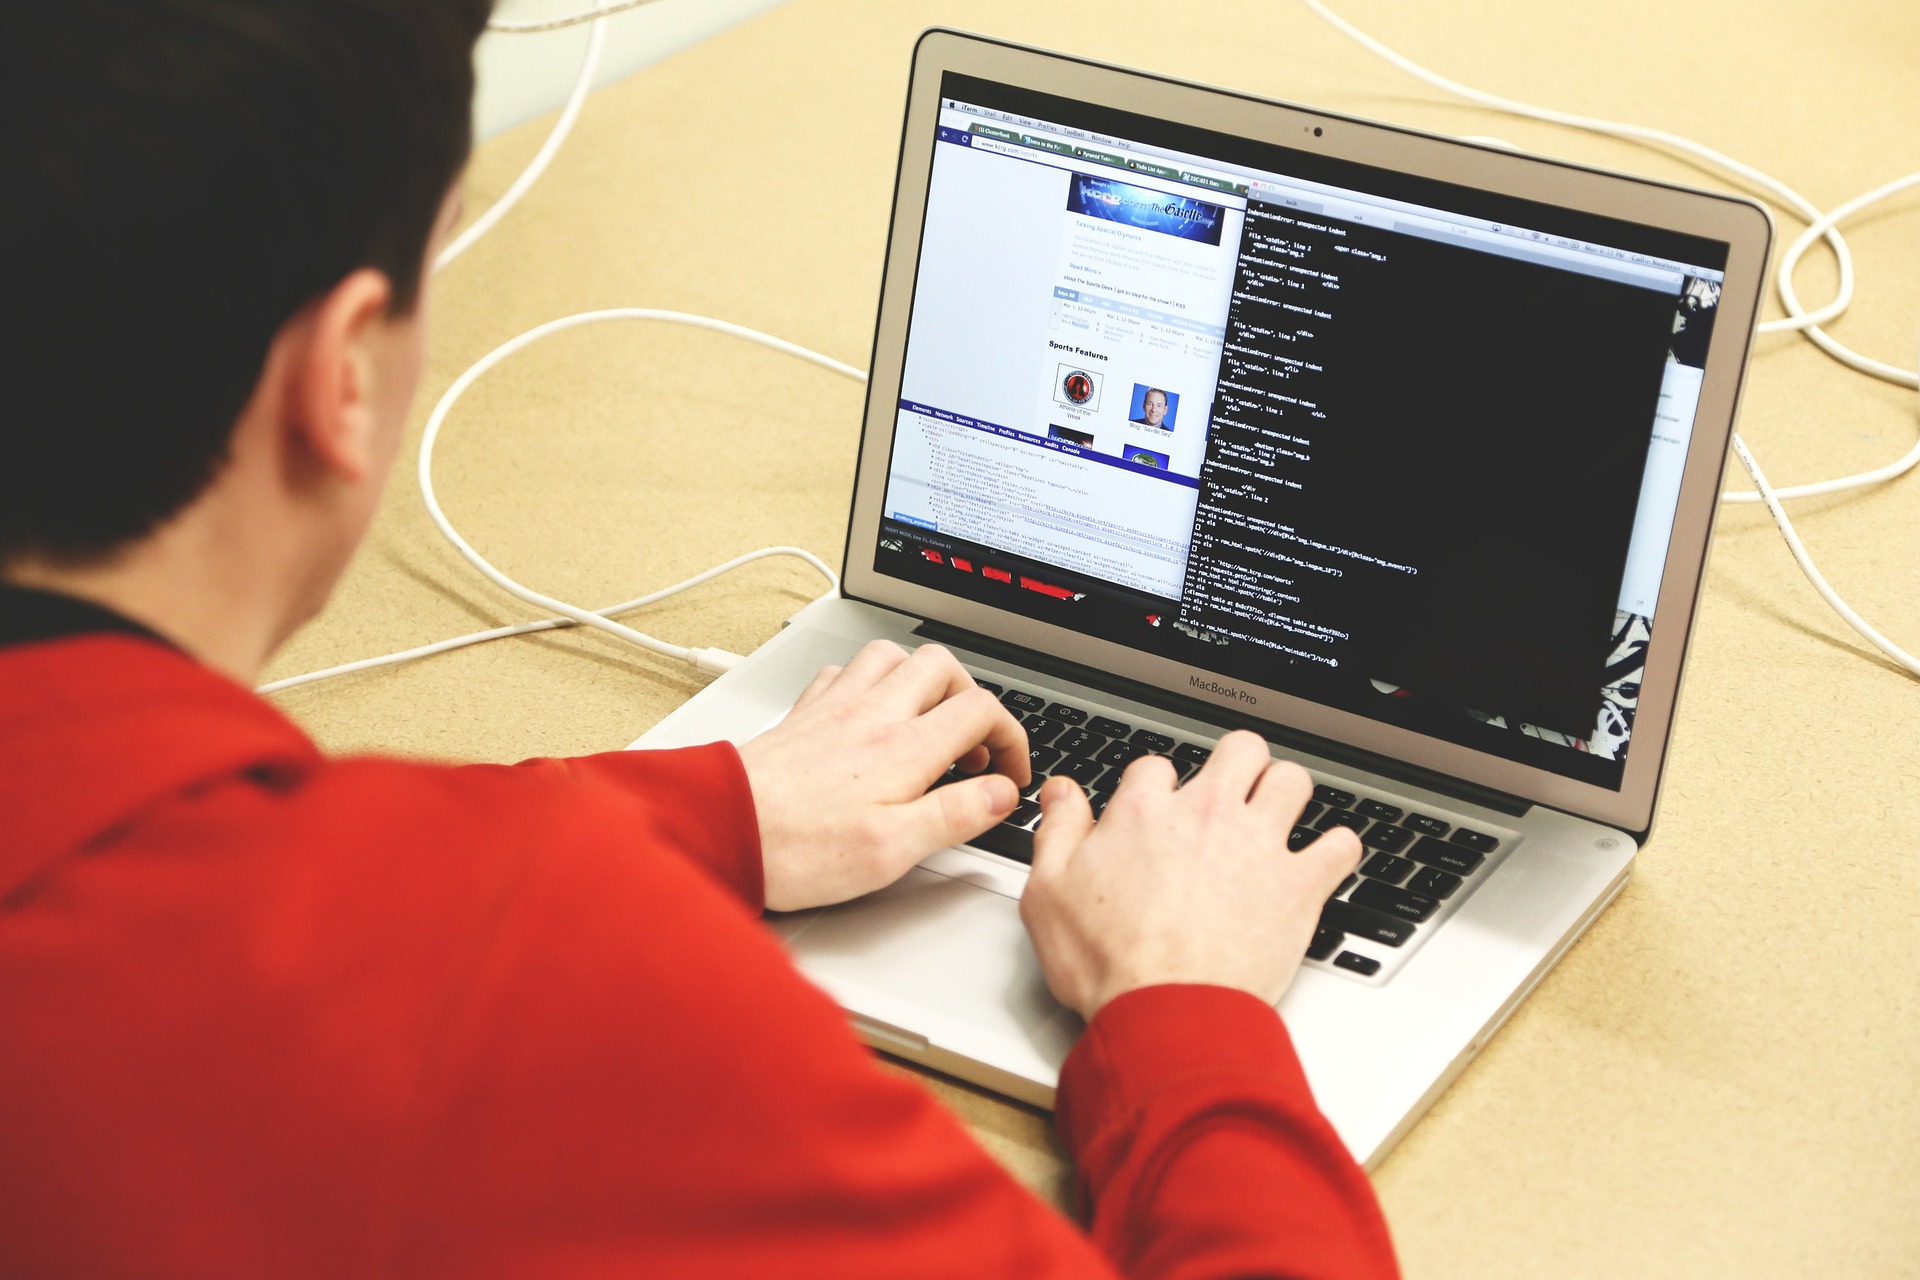 Homem de camisa laranja realiza a programação de um site em um notebook. A tela exibe diversas linhas de código.